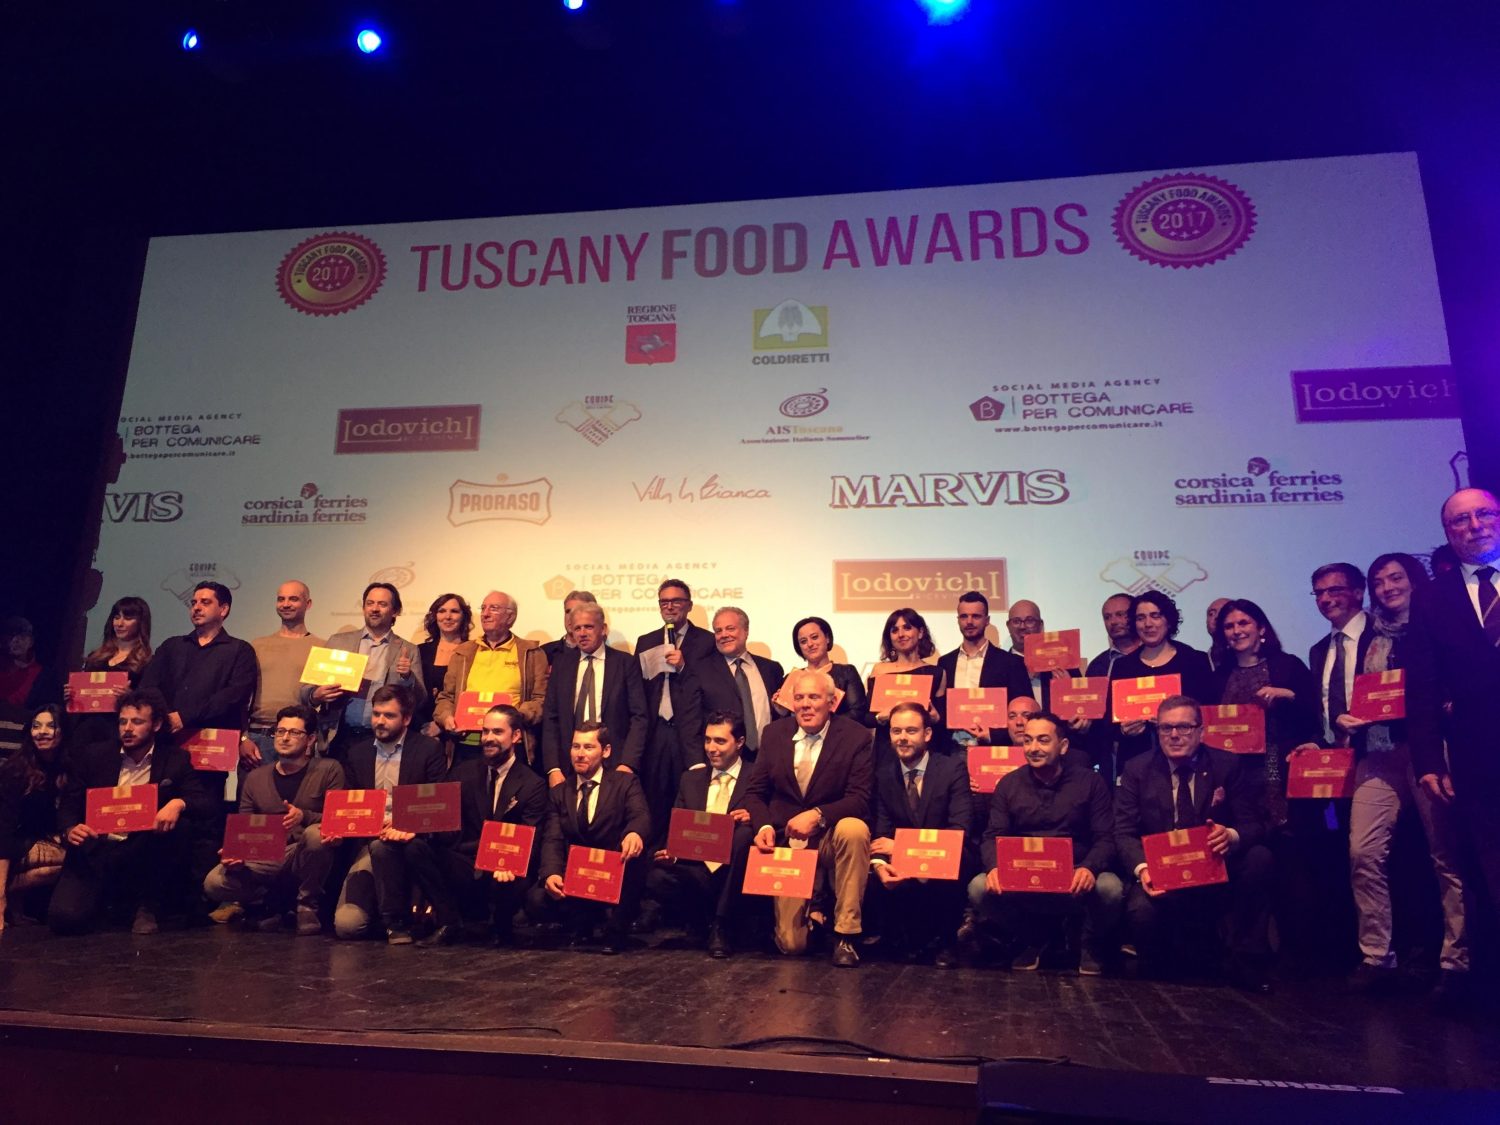 Tornano gli Oscar dell'enogastronomia con la 3°edizione dei Tuscany Food Awards che si concludono con un Gala al Golf Le Pavoniere il 30 Marzo 2019.